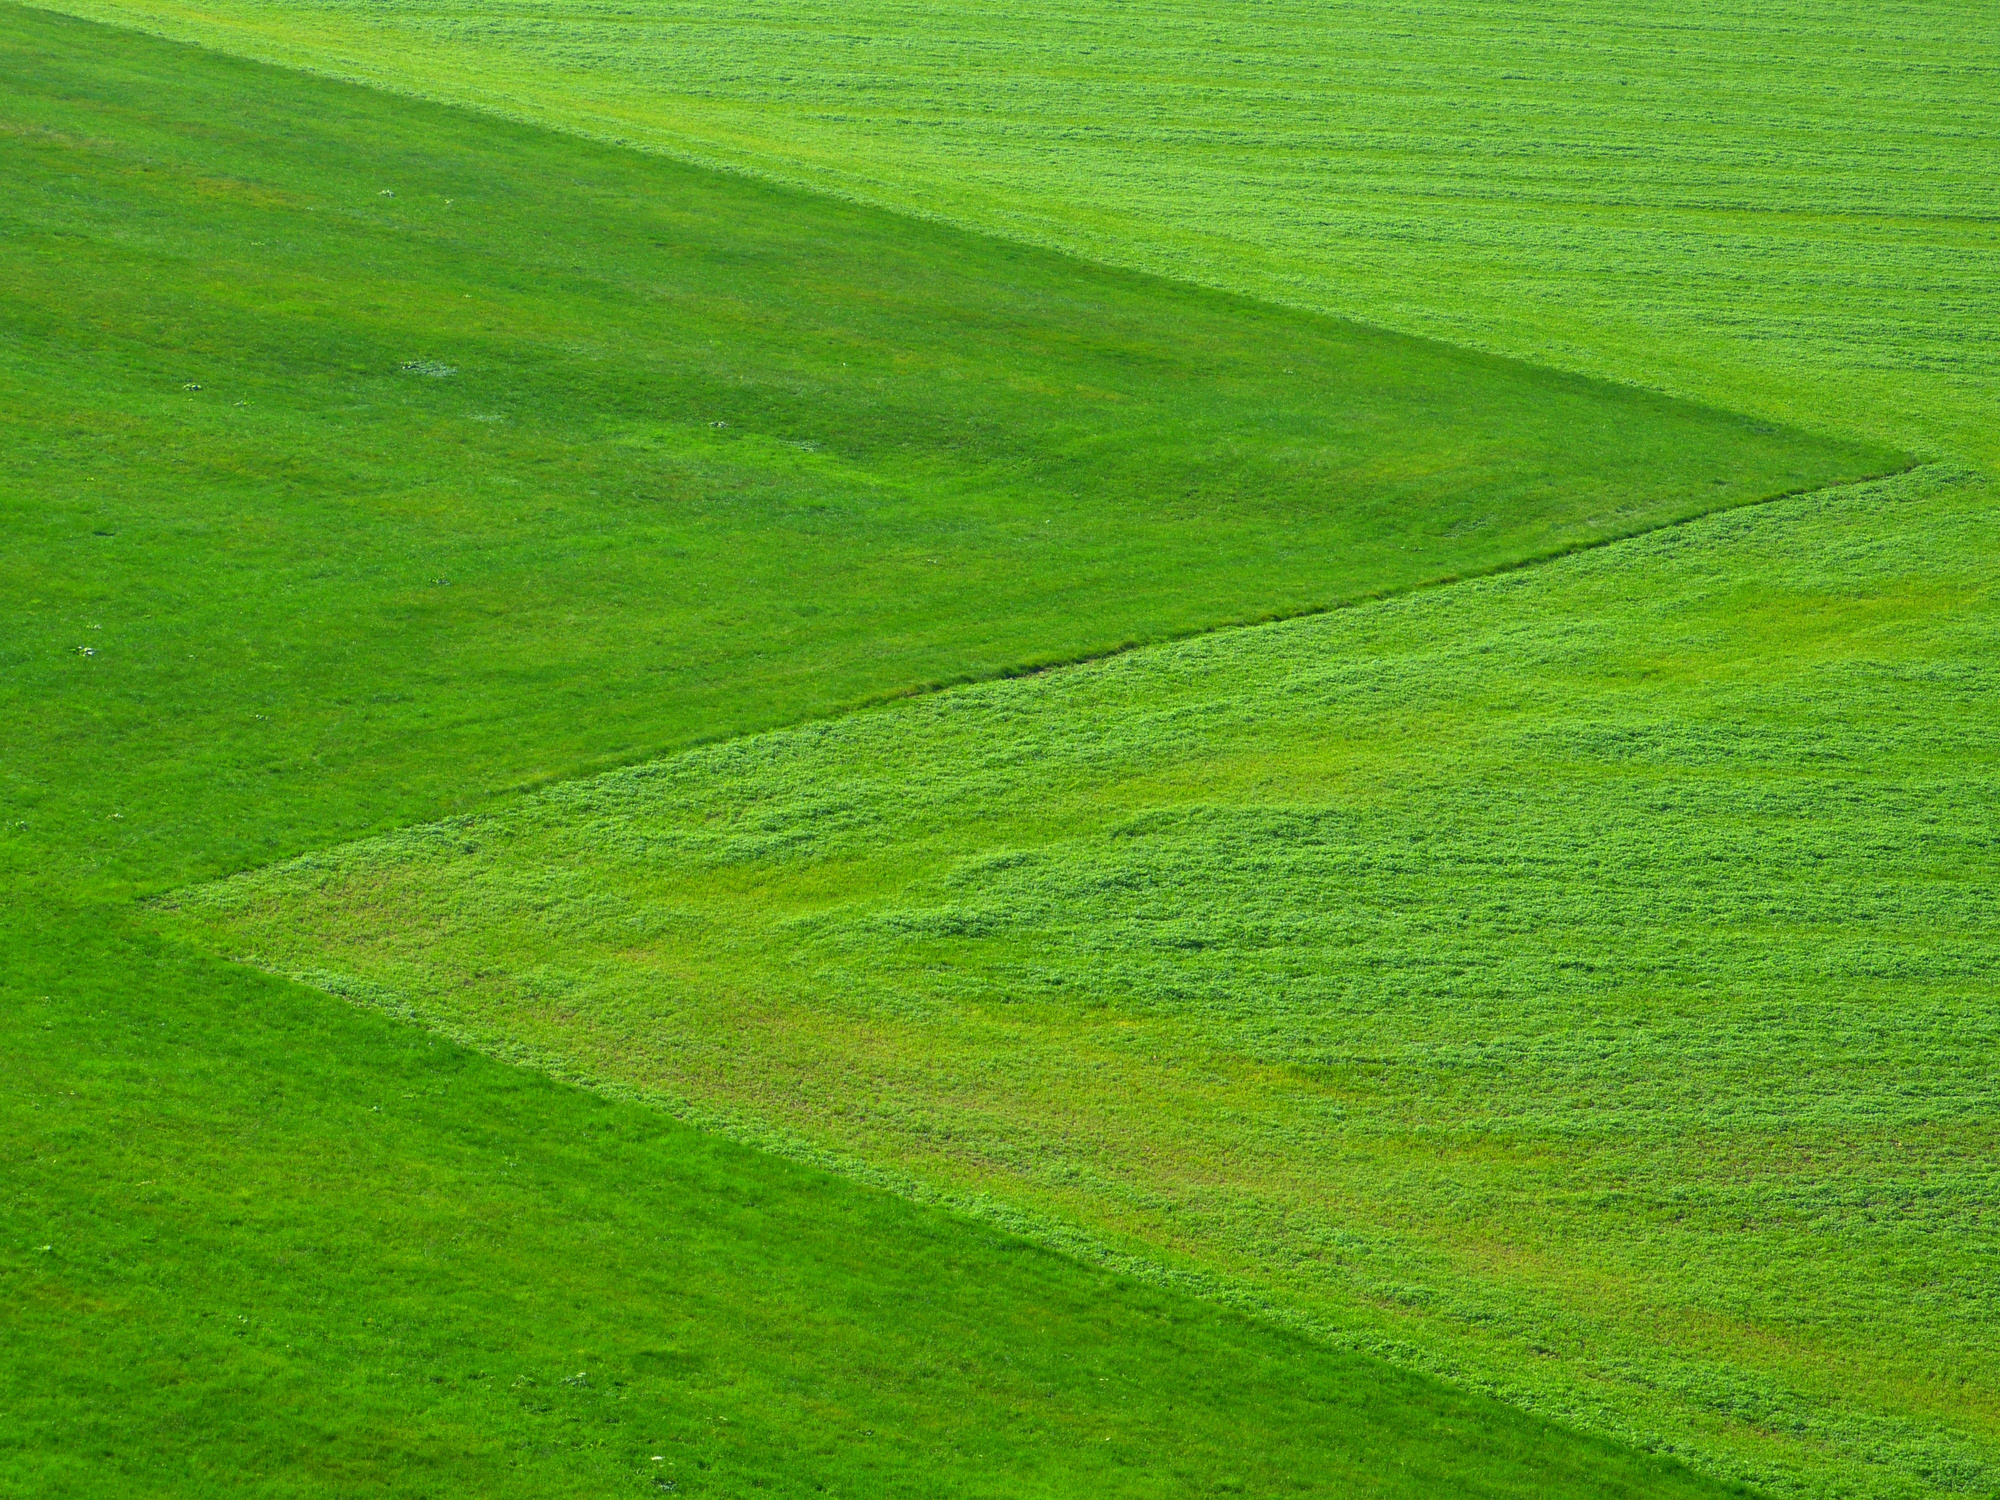 Green Grass Field